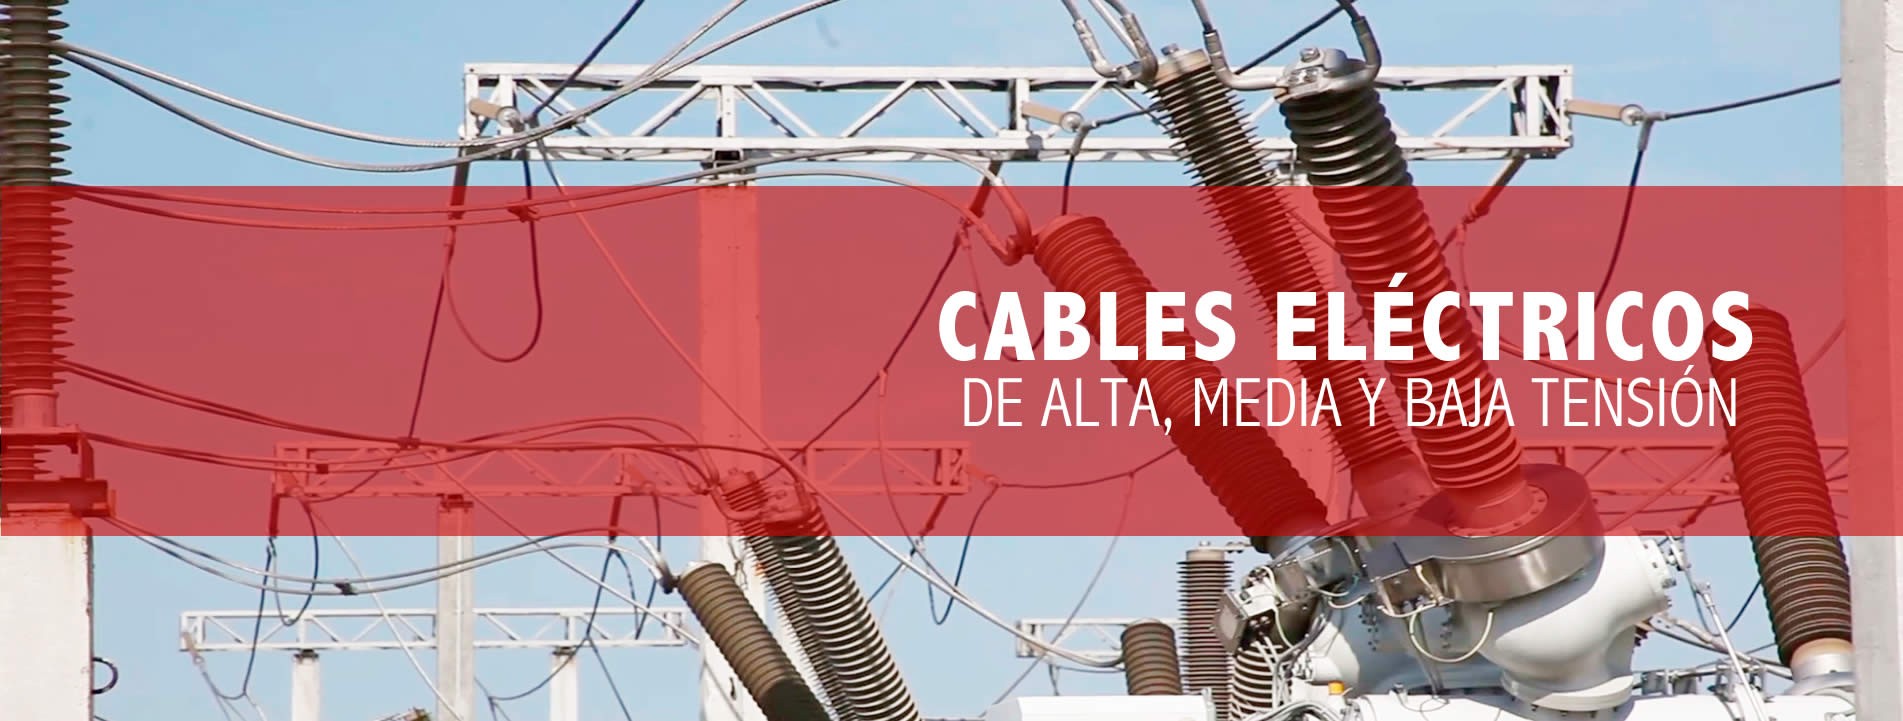 Cables eléctricos de alta, media y baja tensión